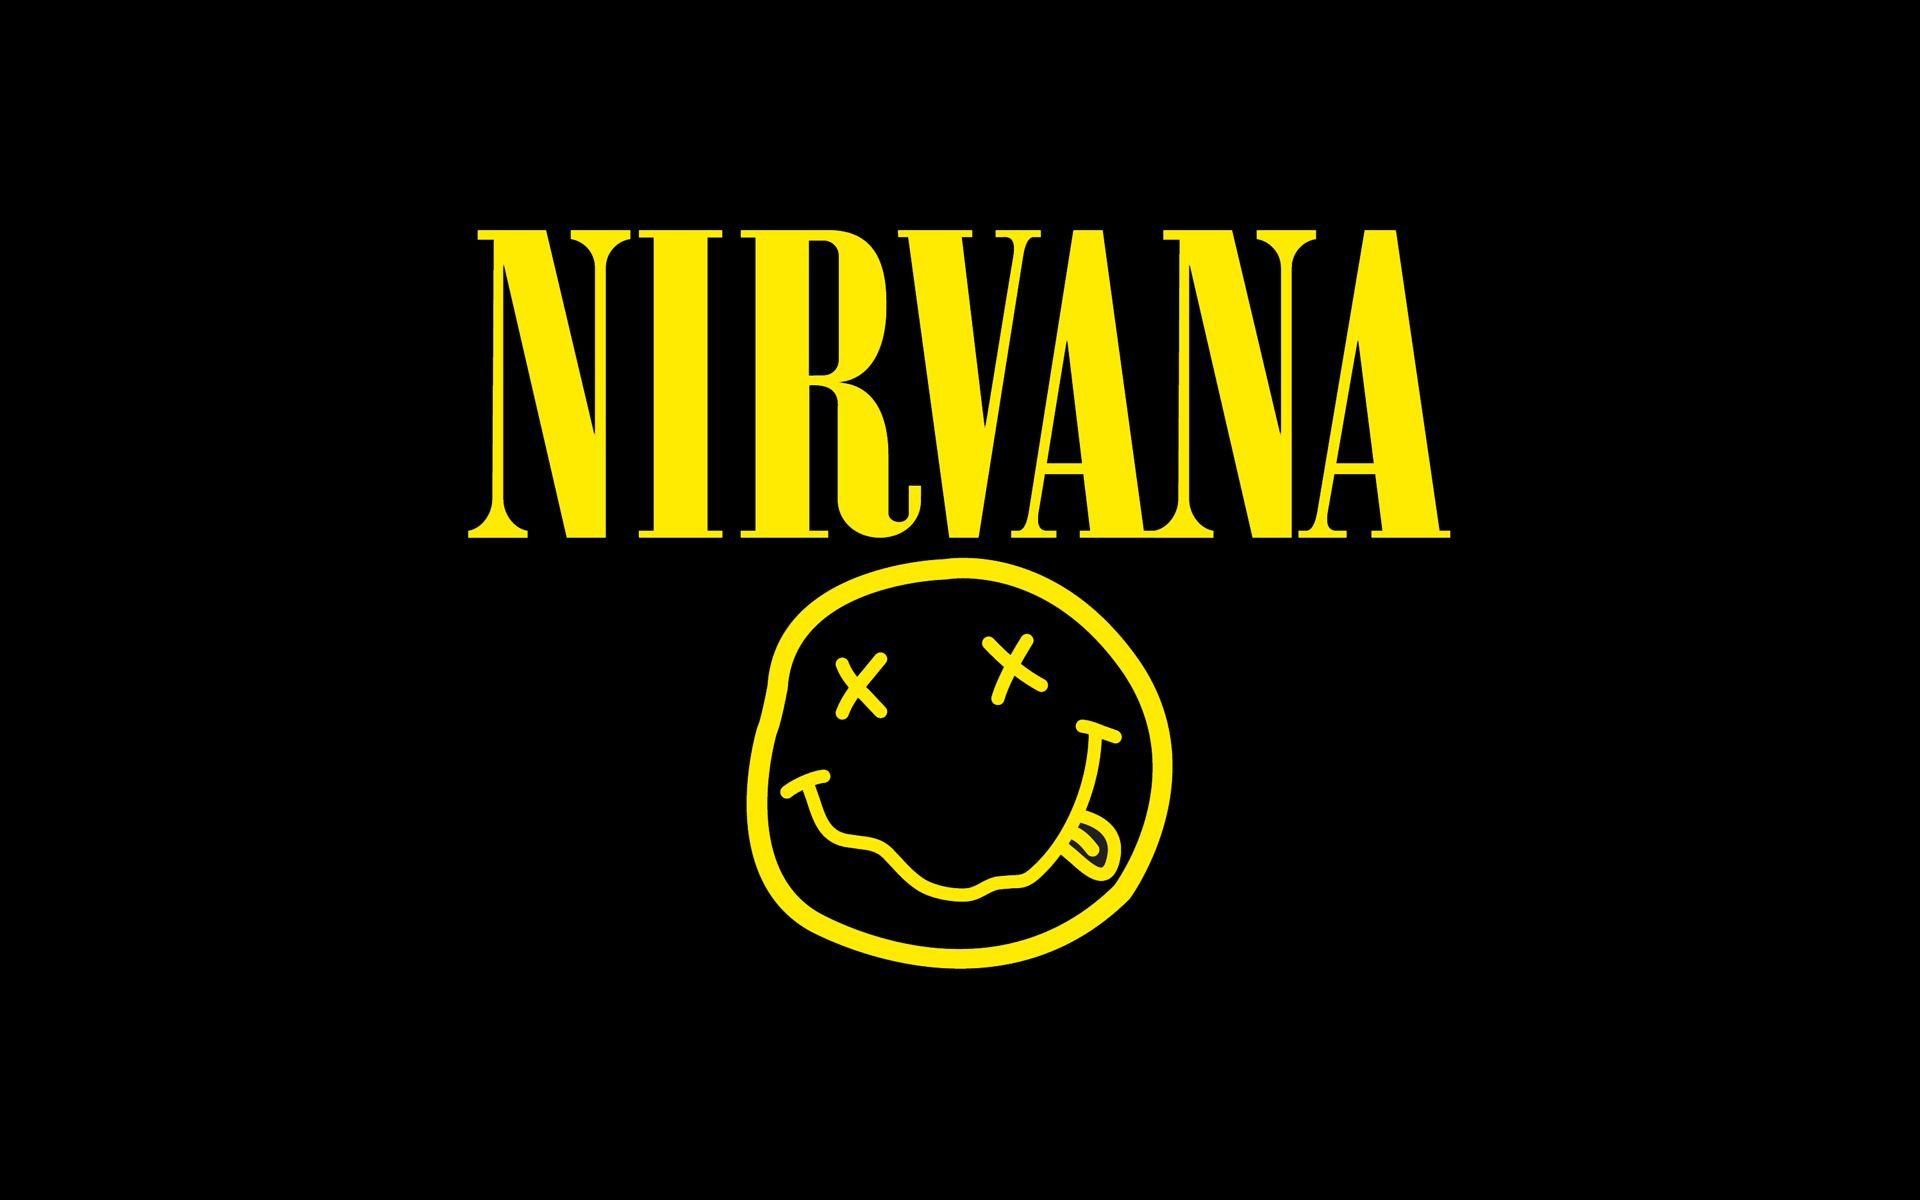 Hình nền Nirvana chất lượng cao với màu sắc sống động và chi tiết tinh tế, chuẩn bị đón nhận trải nghiệm mới lạ tuyệt vời đi kèm với những bản nhạc Rock đỉnh cao.